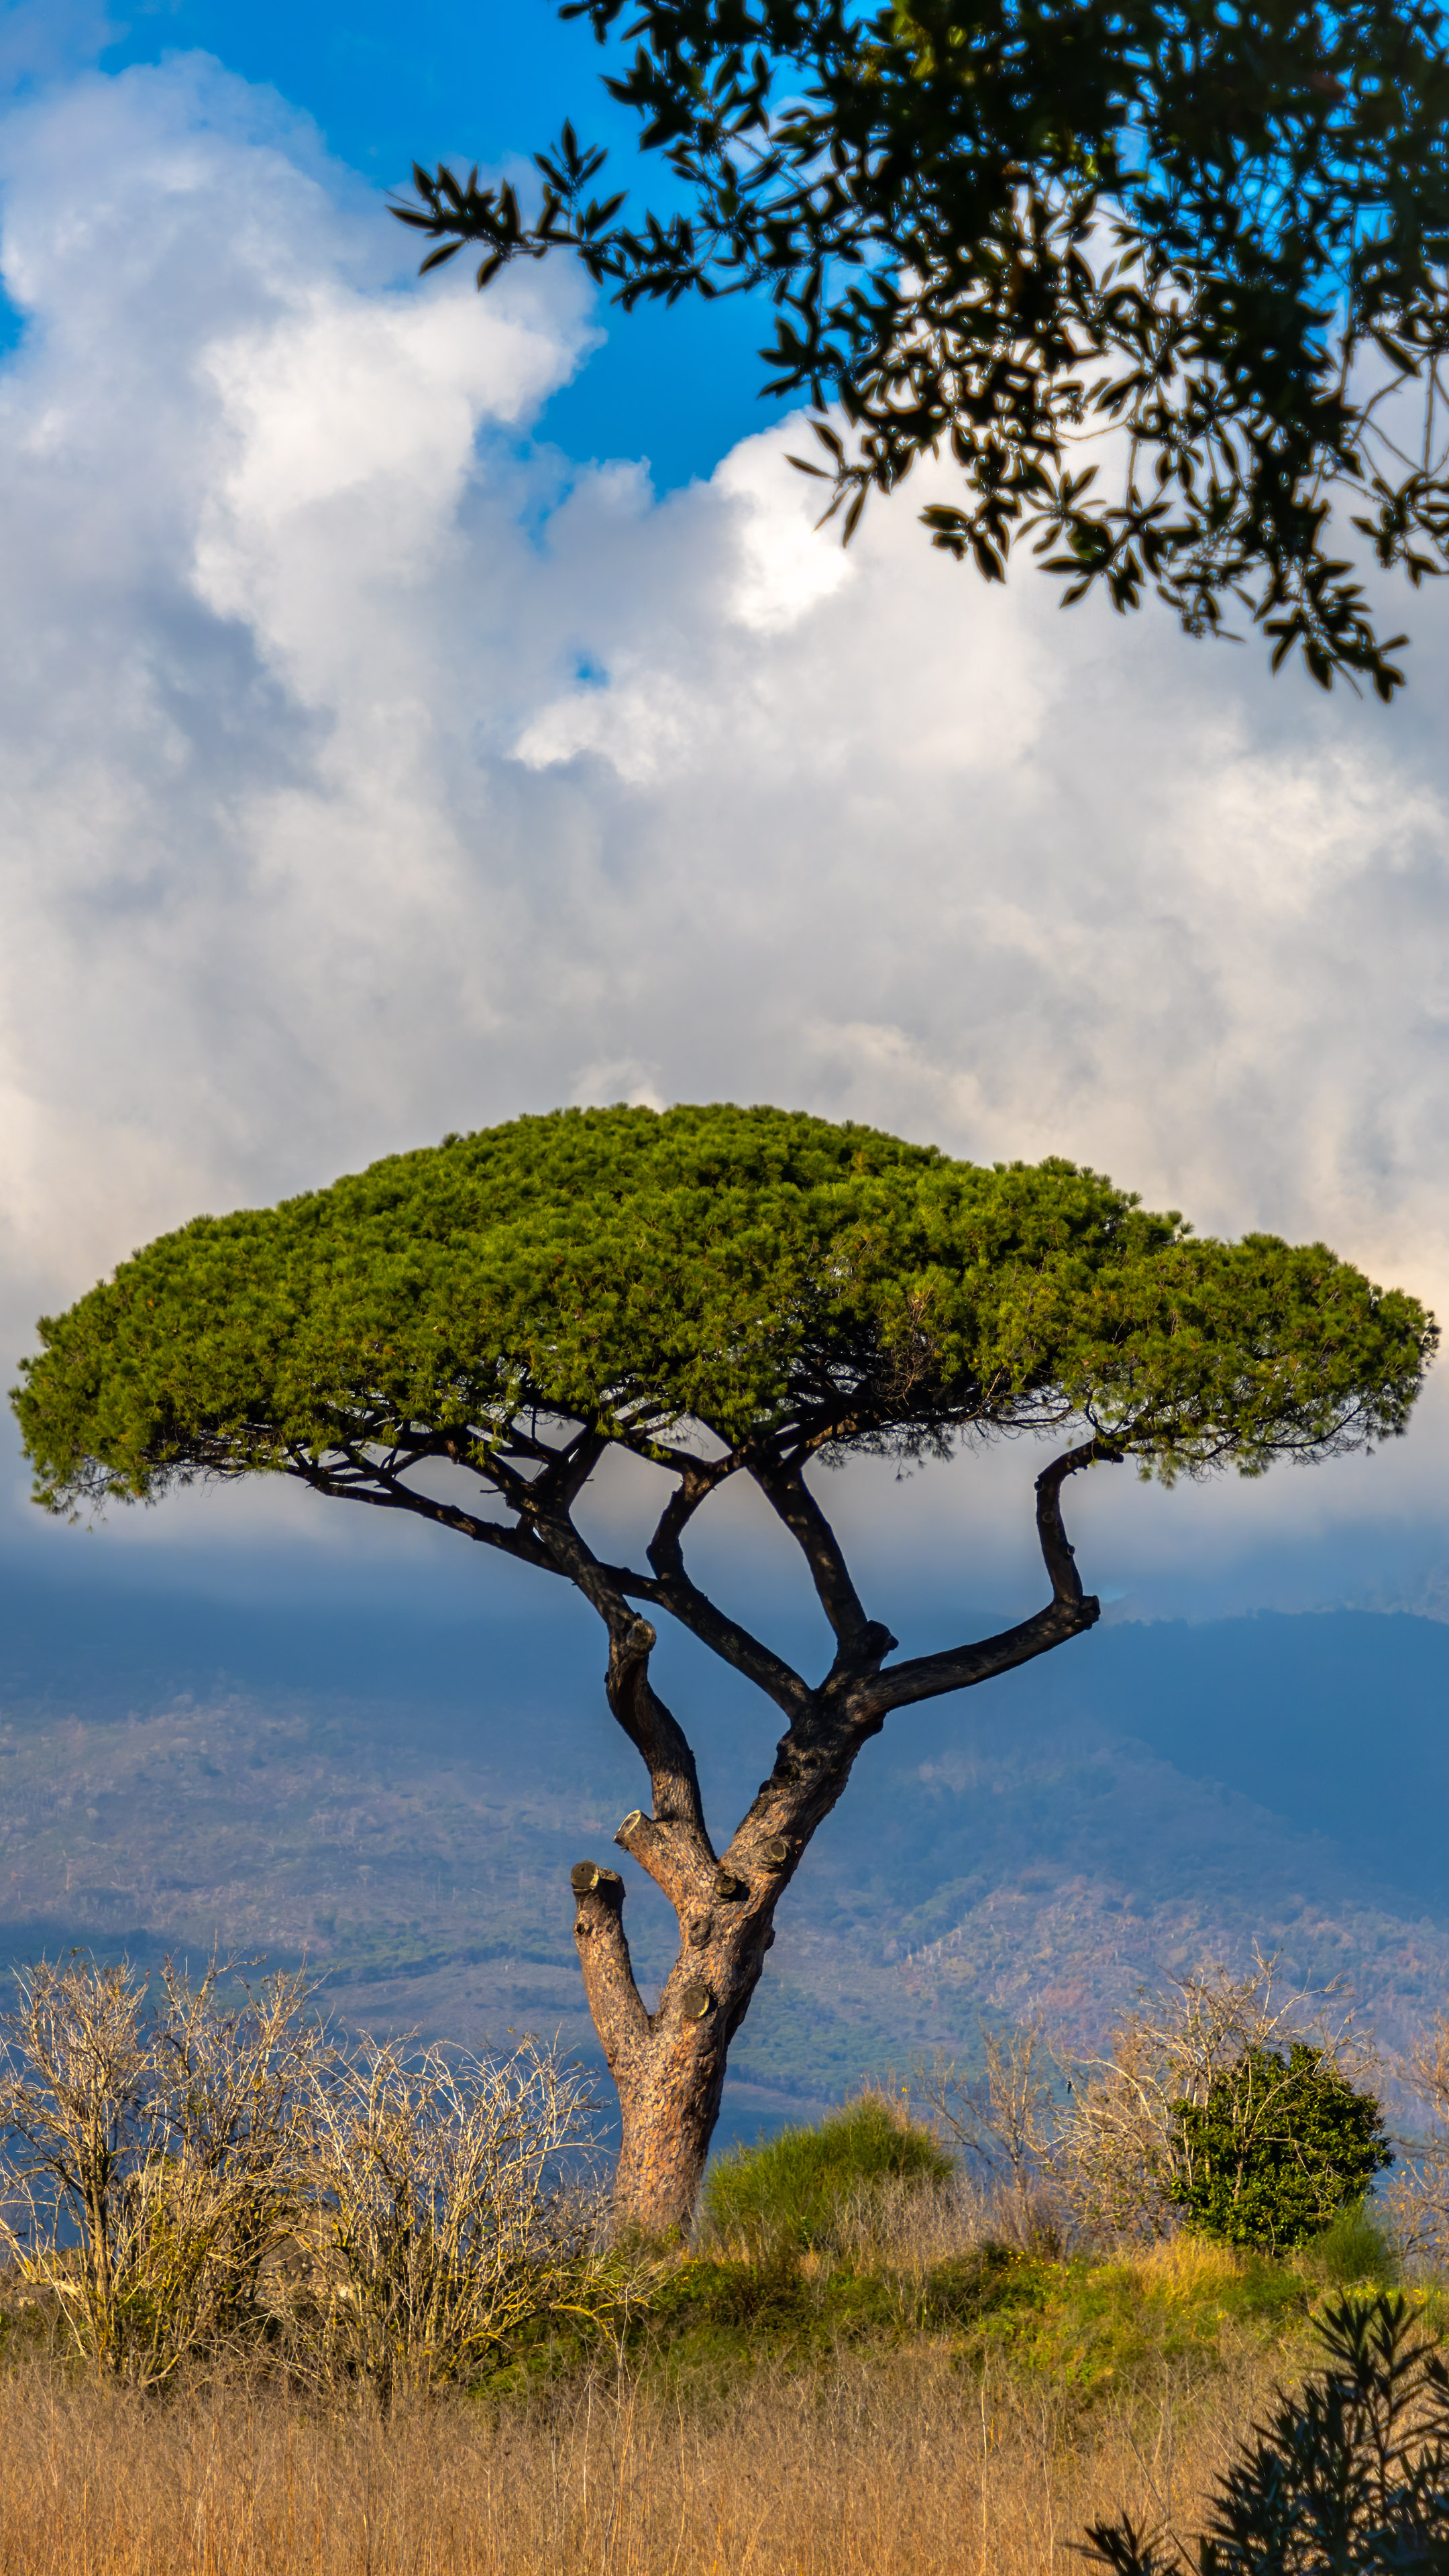 Transformez votre iPhone avec nos fonds d'écran cool, présentant un arbre majestueux sur fond de paysages à couper le souffle de l'Italie.